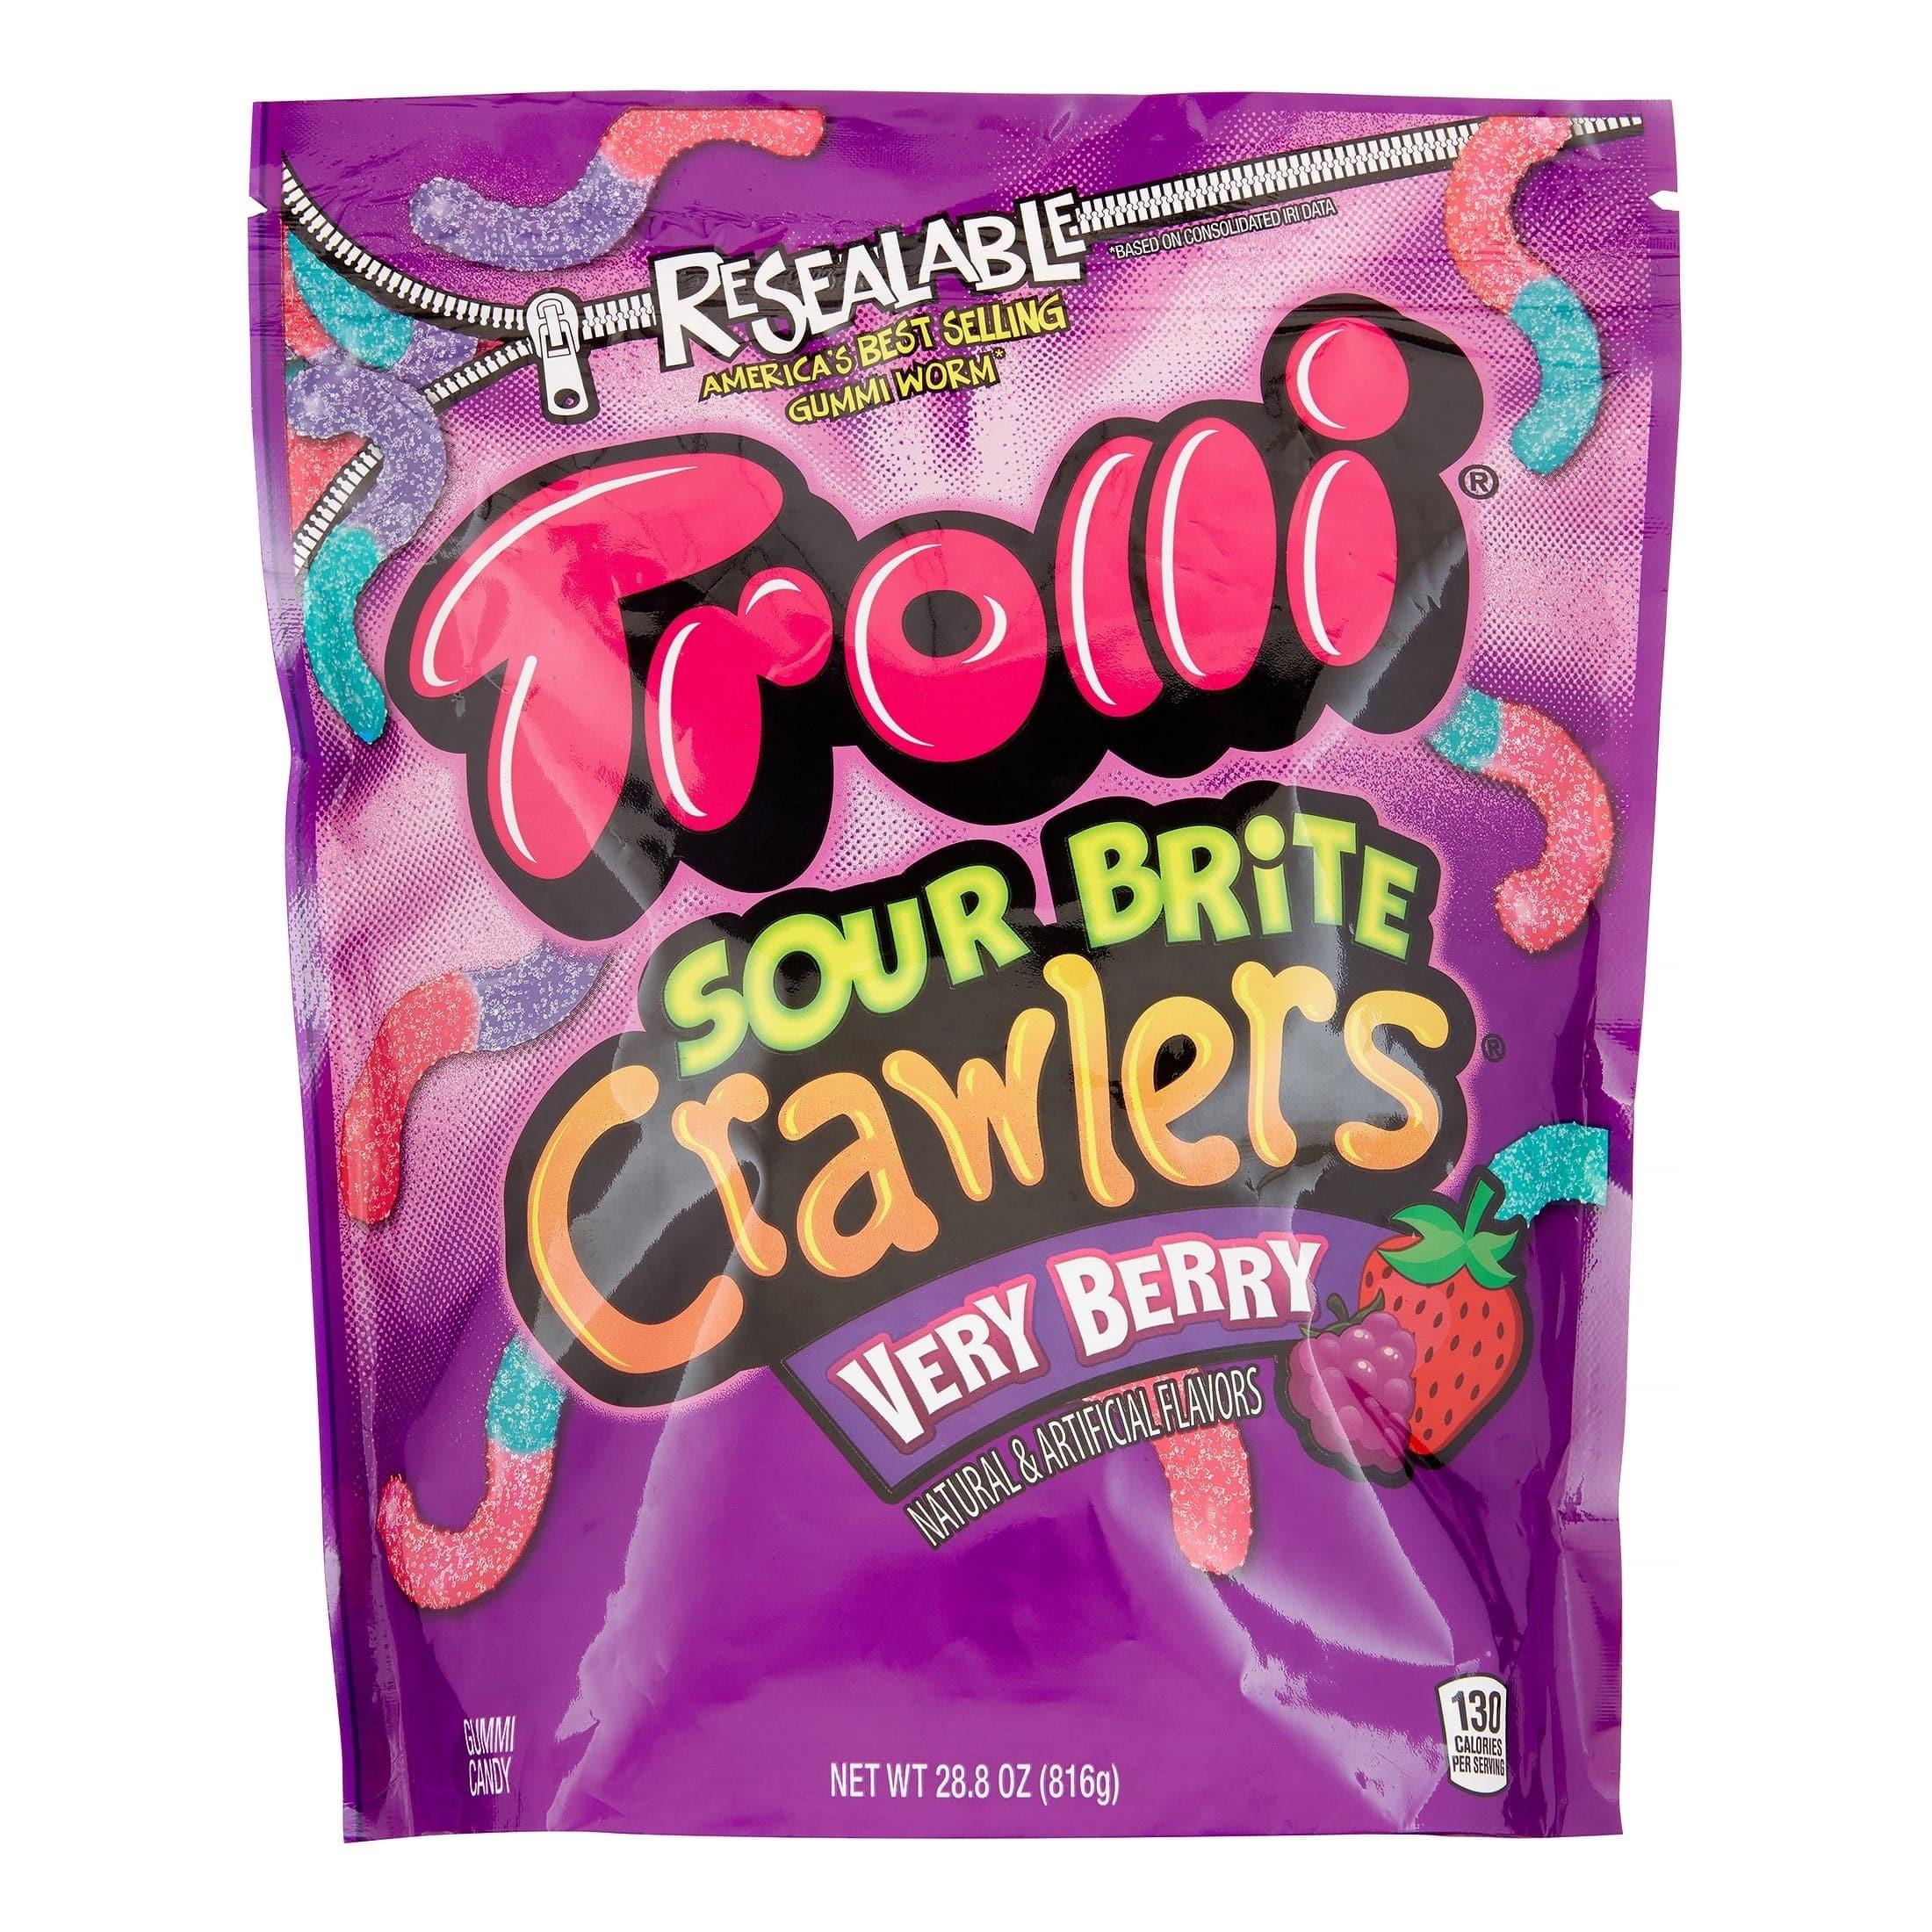 Trolli Strawberry Puffs 4.25oz Bag